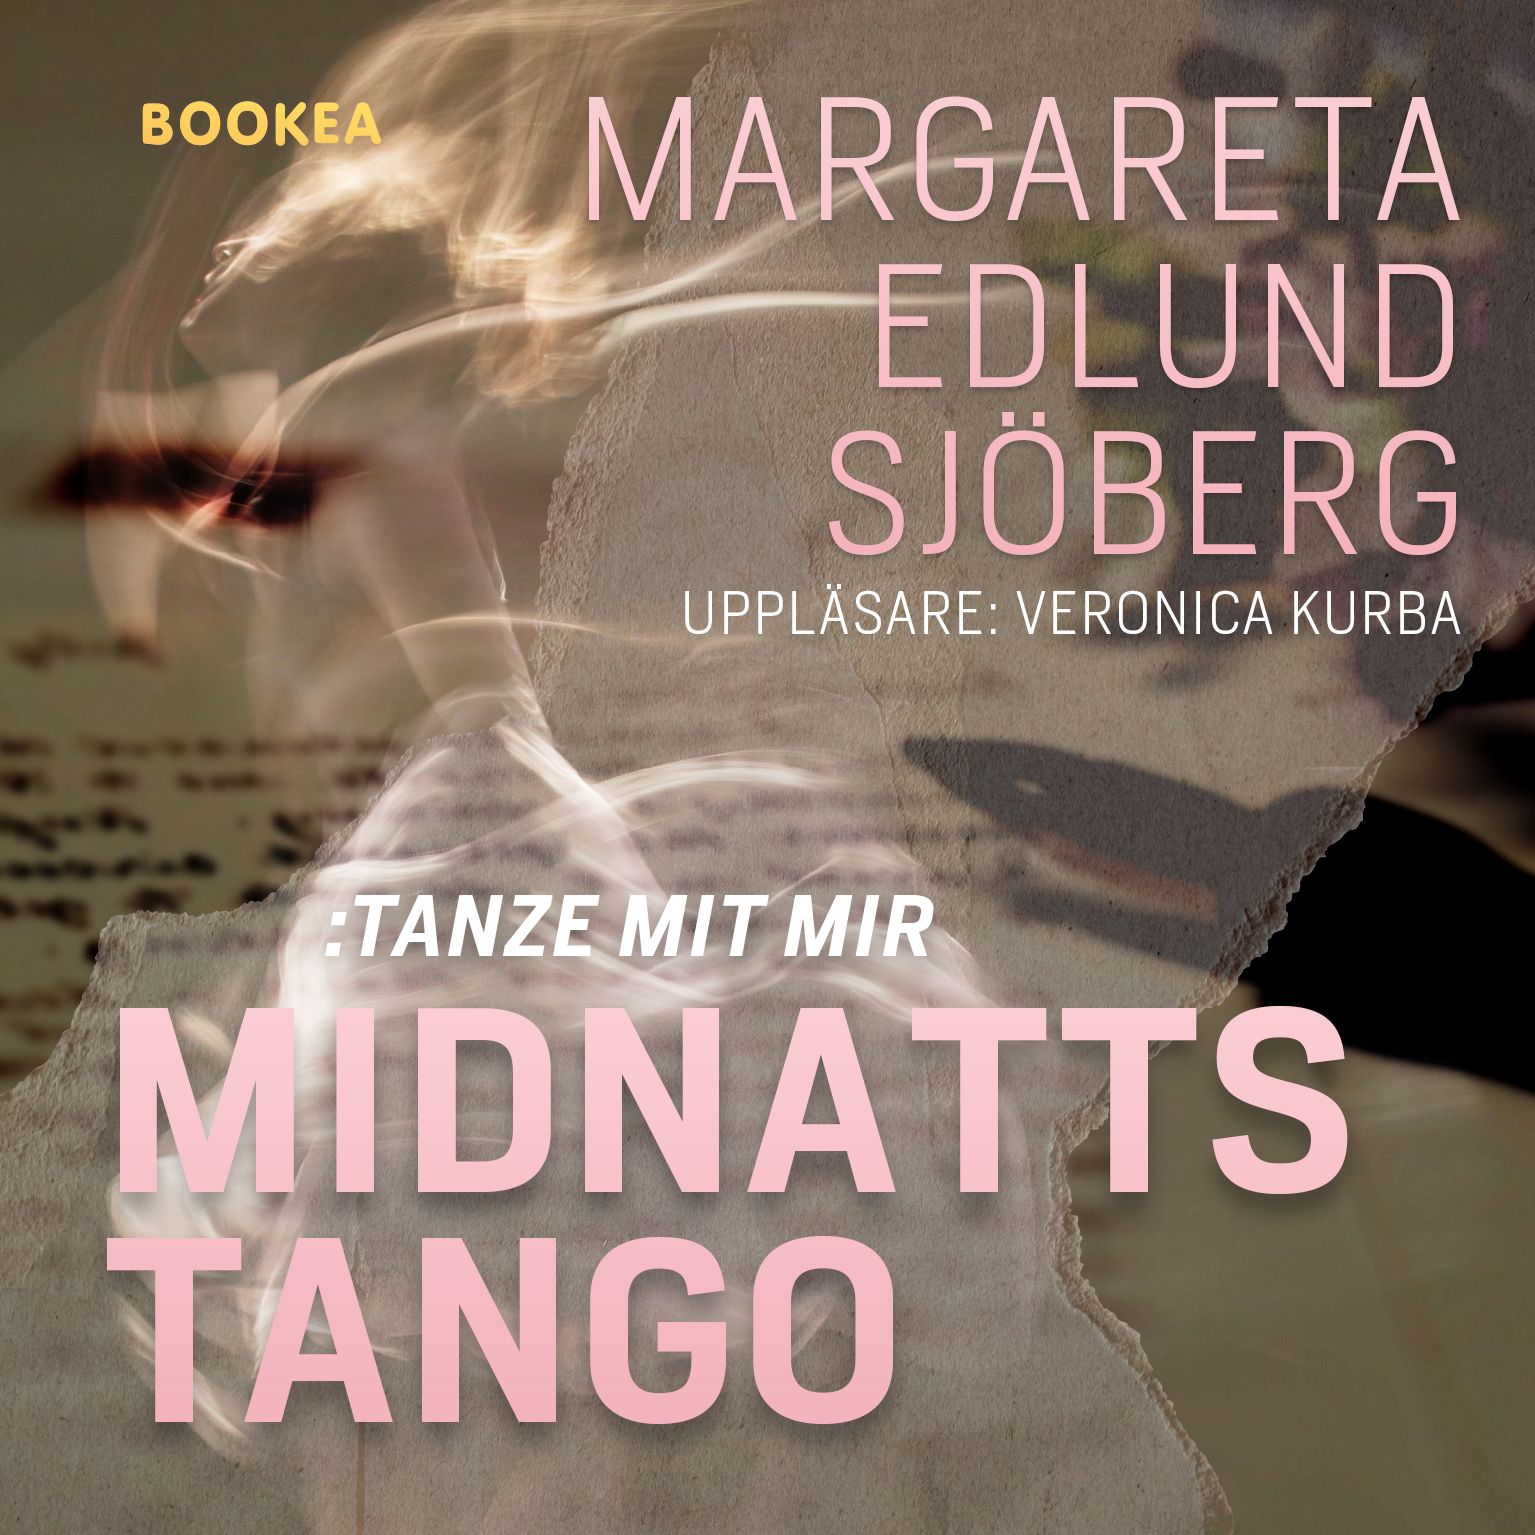 Midnattstango : tanze mit mir, audiobook by Margareta Edlund Sjöberg